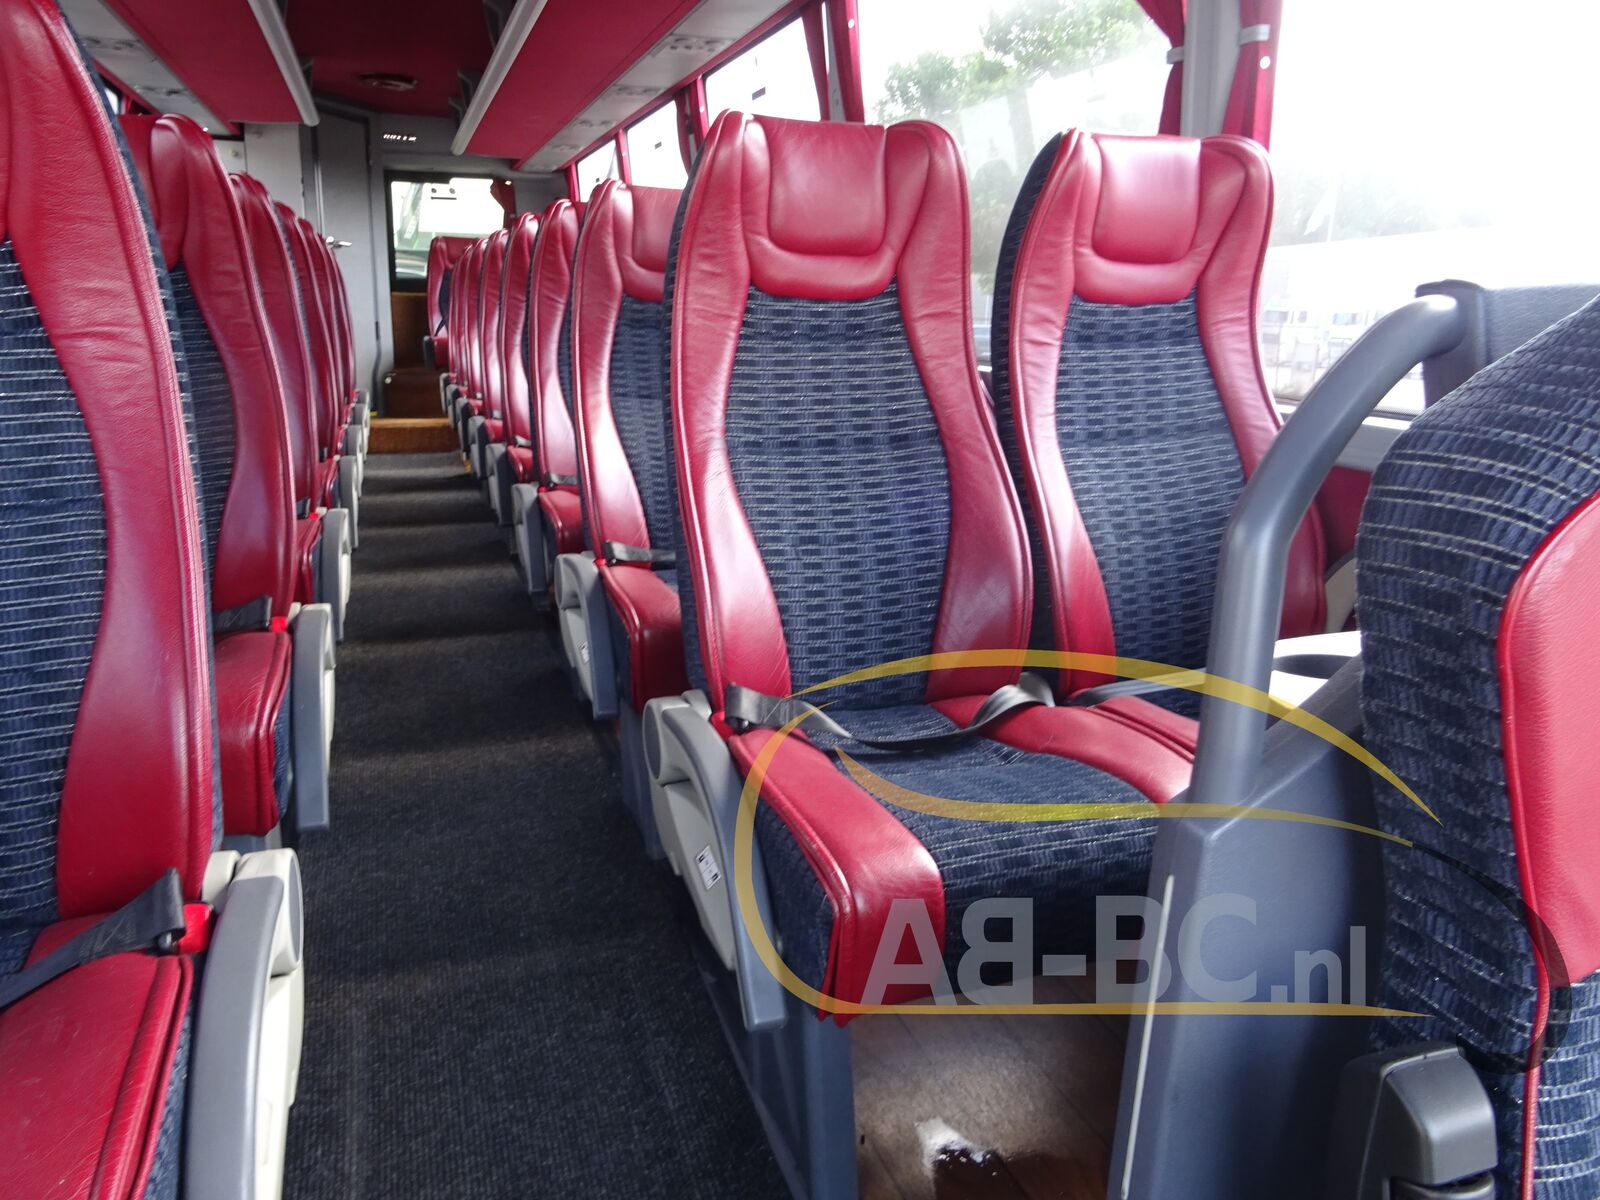 coach-bus-TEMSA-MD9-34-Seats-EURO-6---1660816747923106945_orig_def346c569c920cf1346a81ee1fc8e6c--22080209493466675200